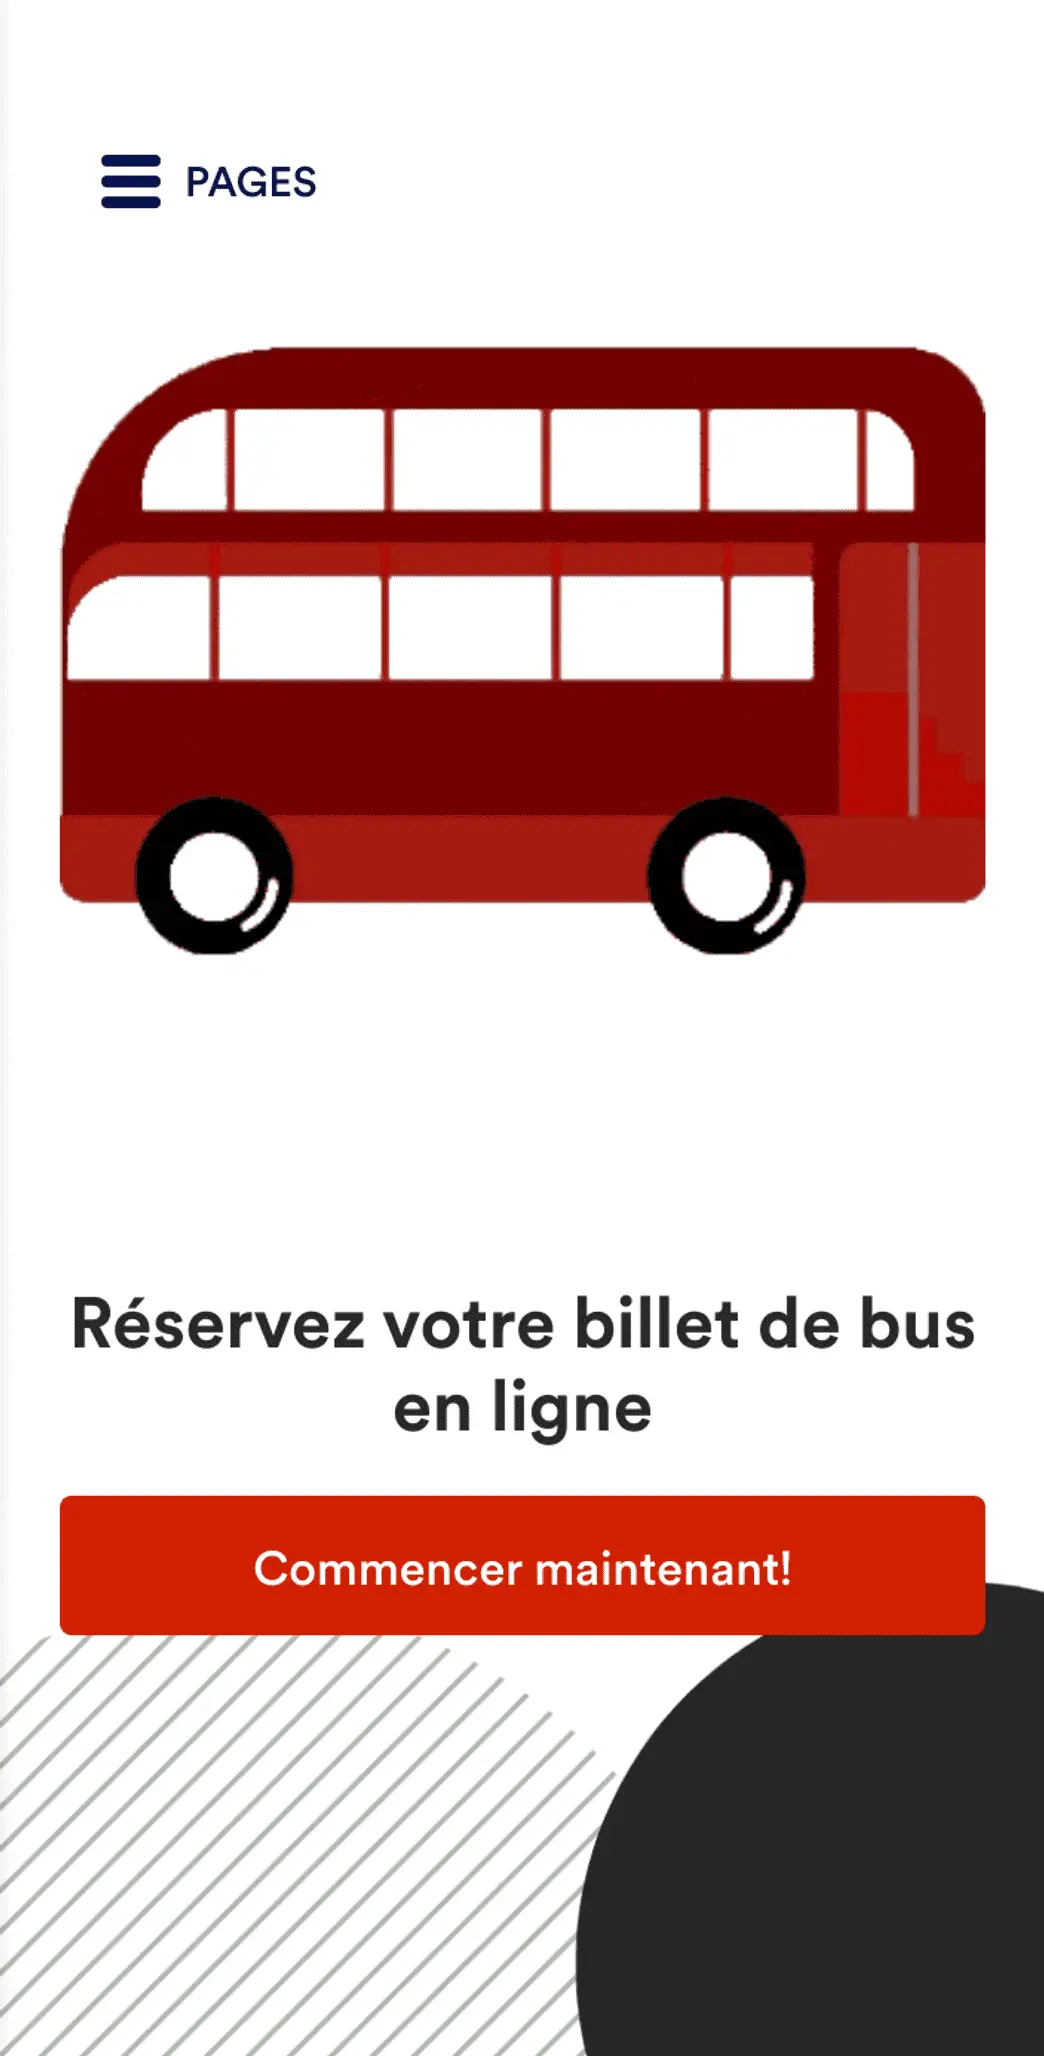 Application de réservation de billets de bus en ligne